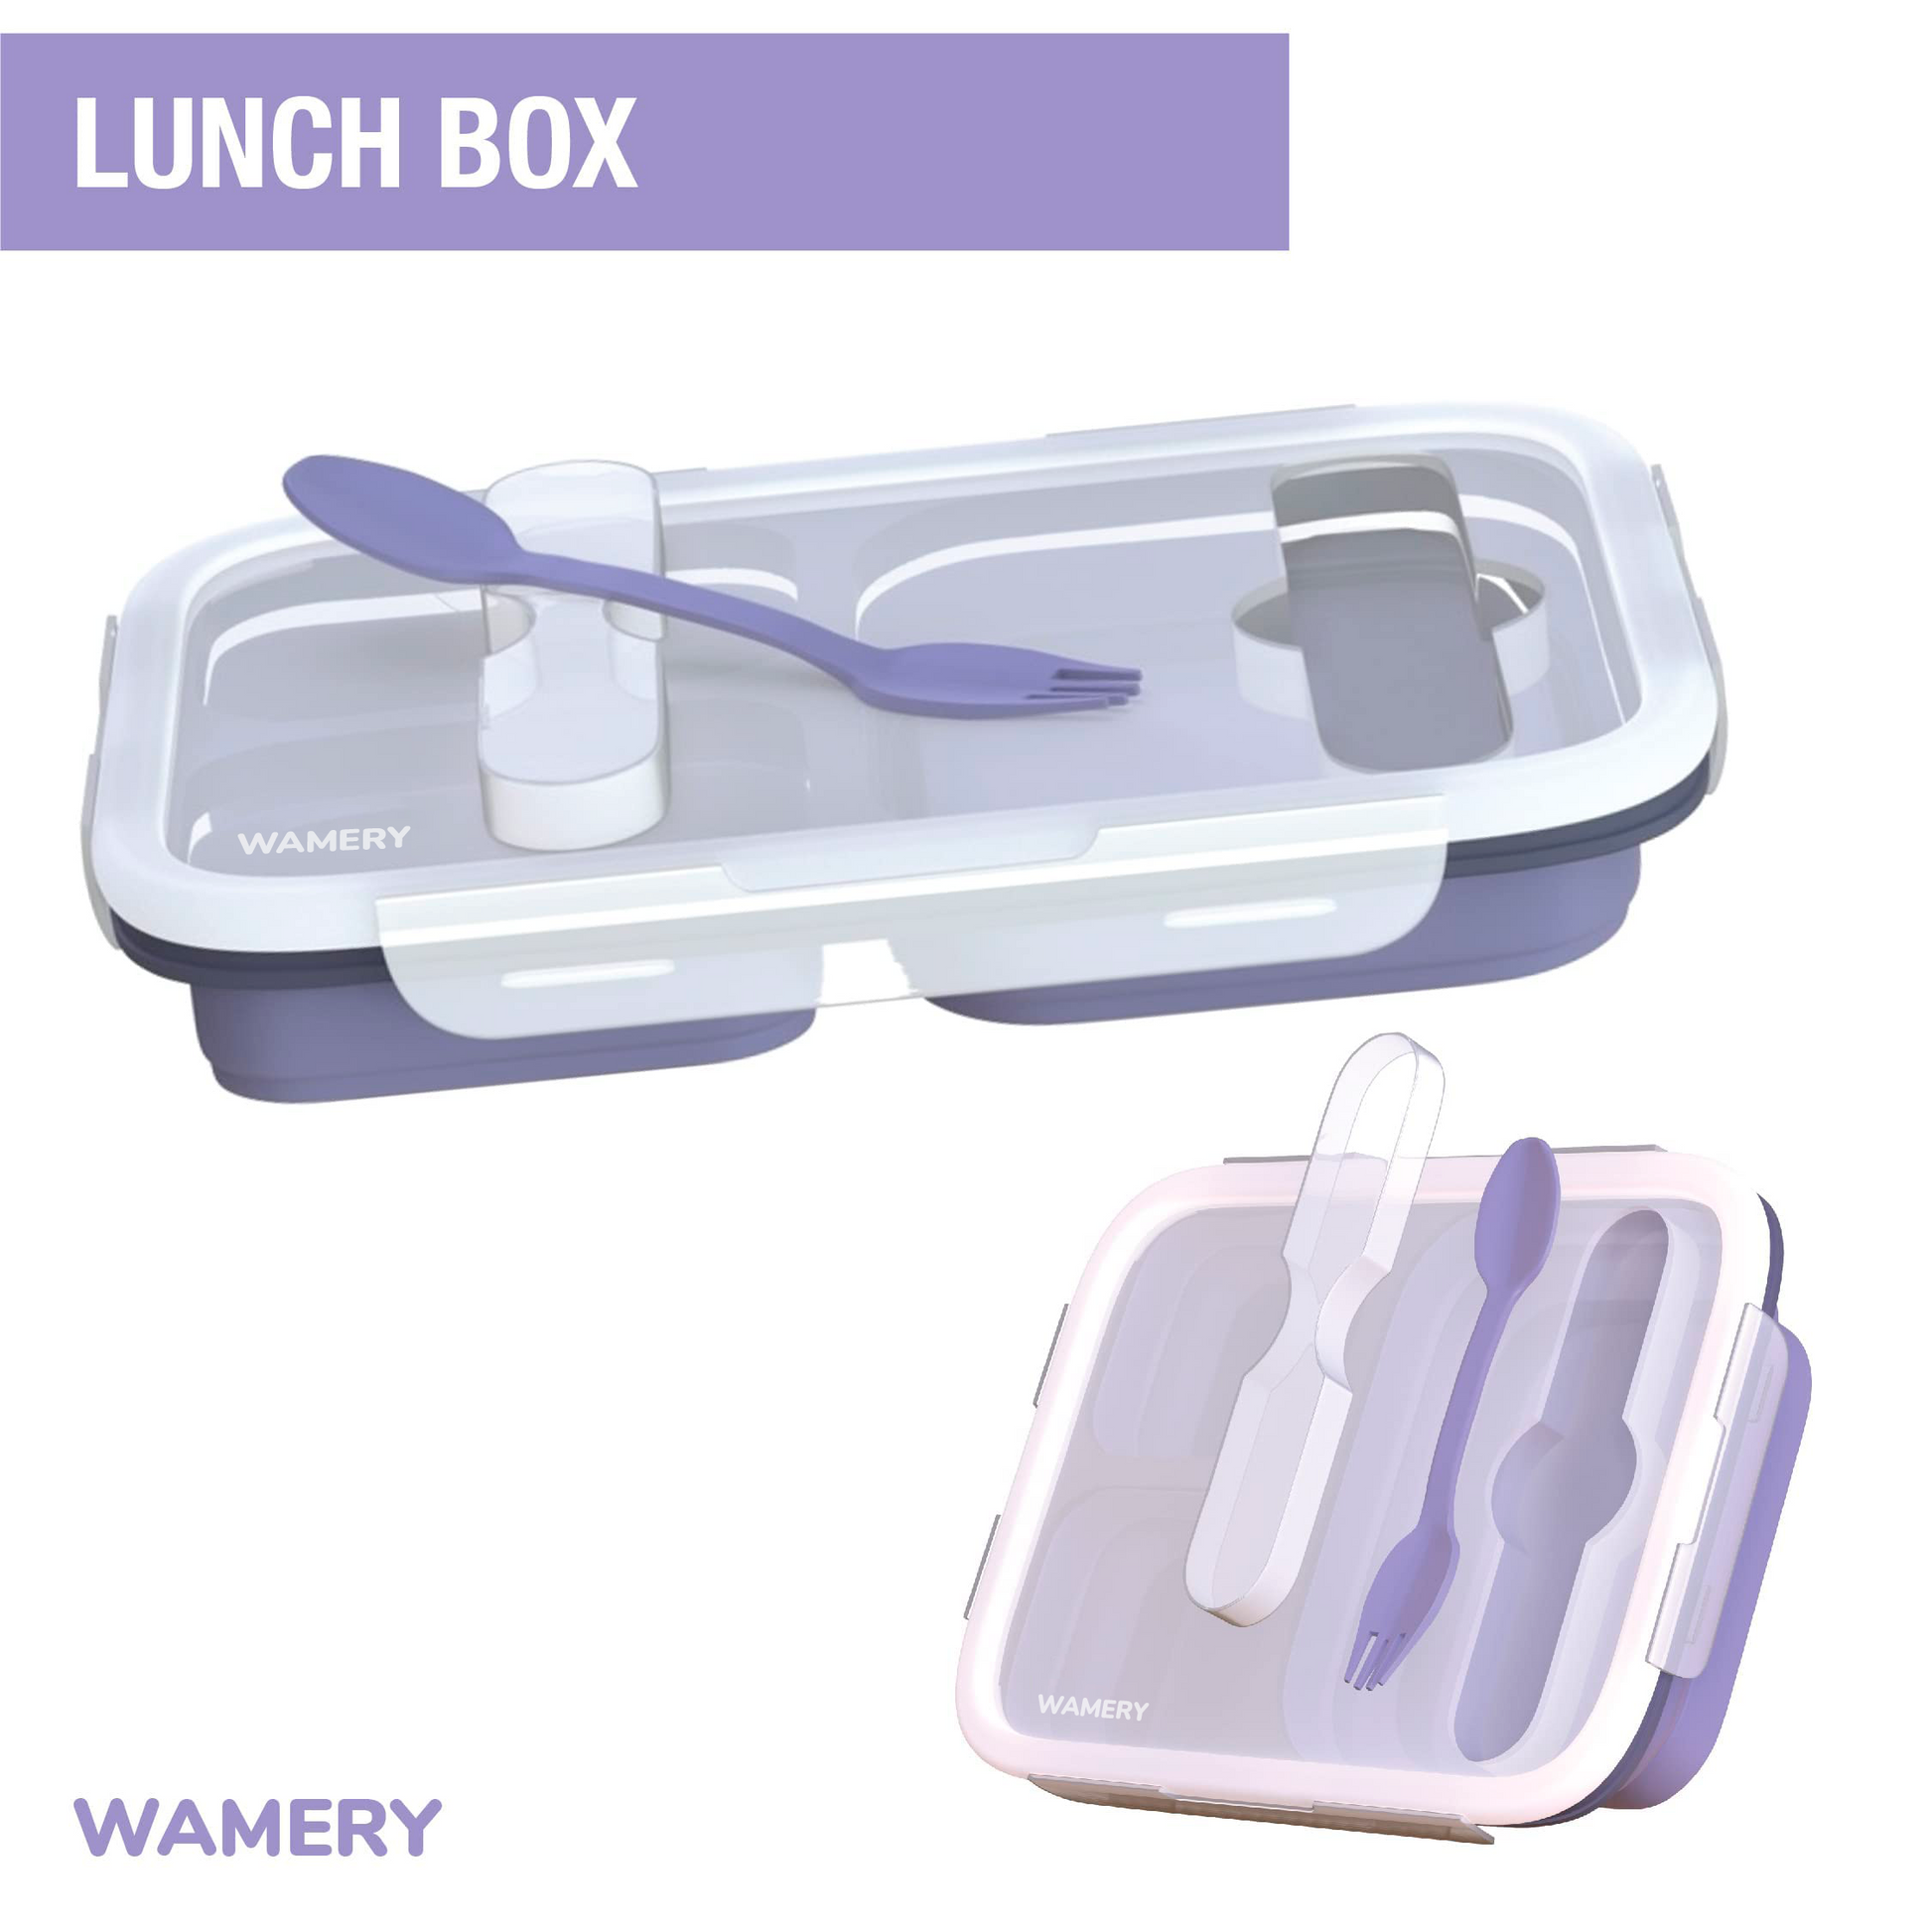 HANARA Collapsible Bento Lunch Box  Large Capacity, 3 Compartments, S –  HANARA USA